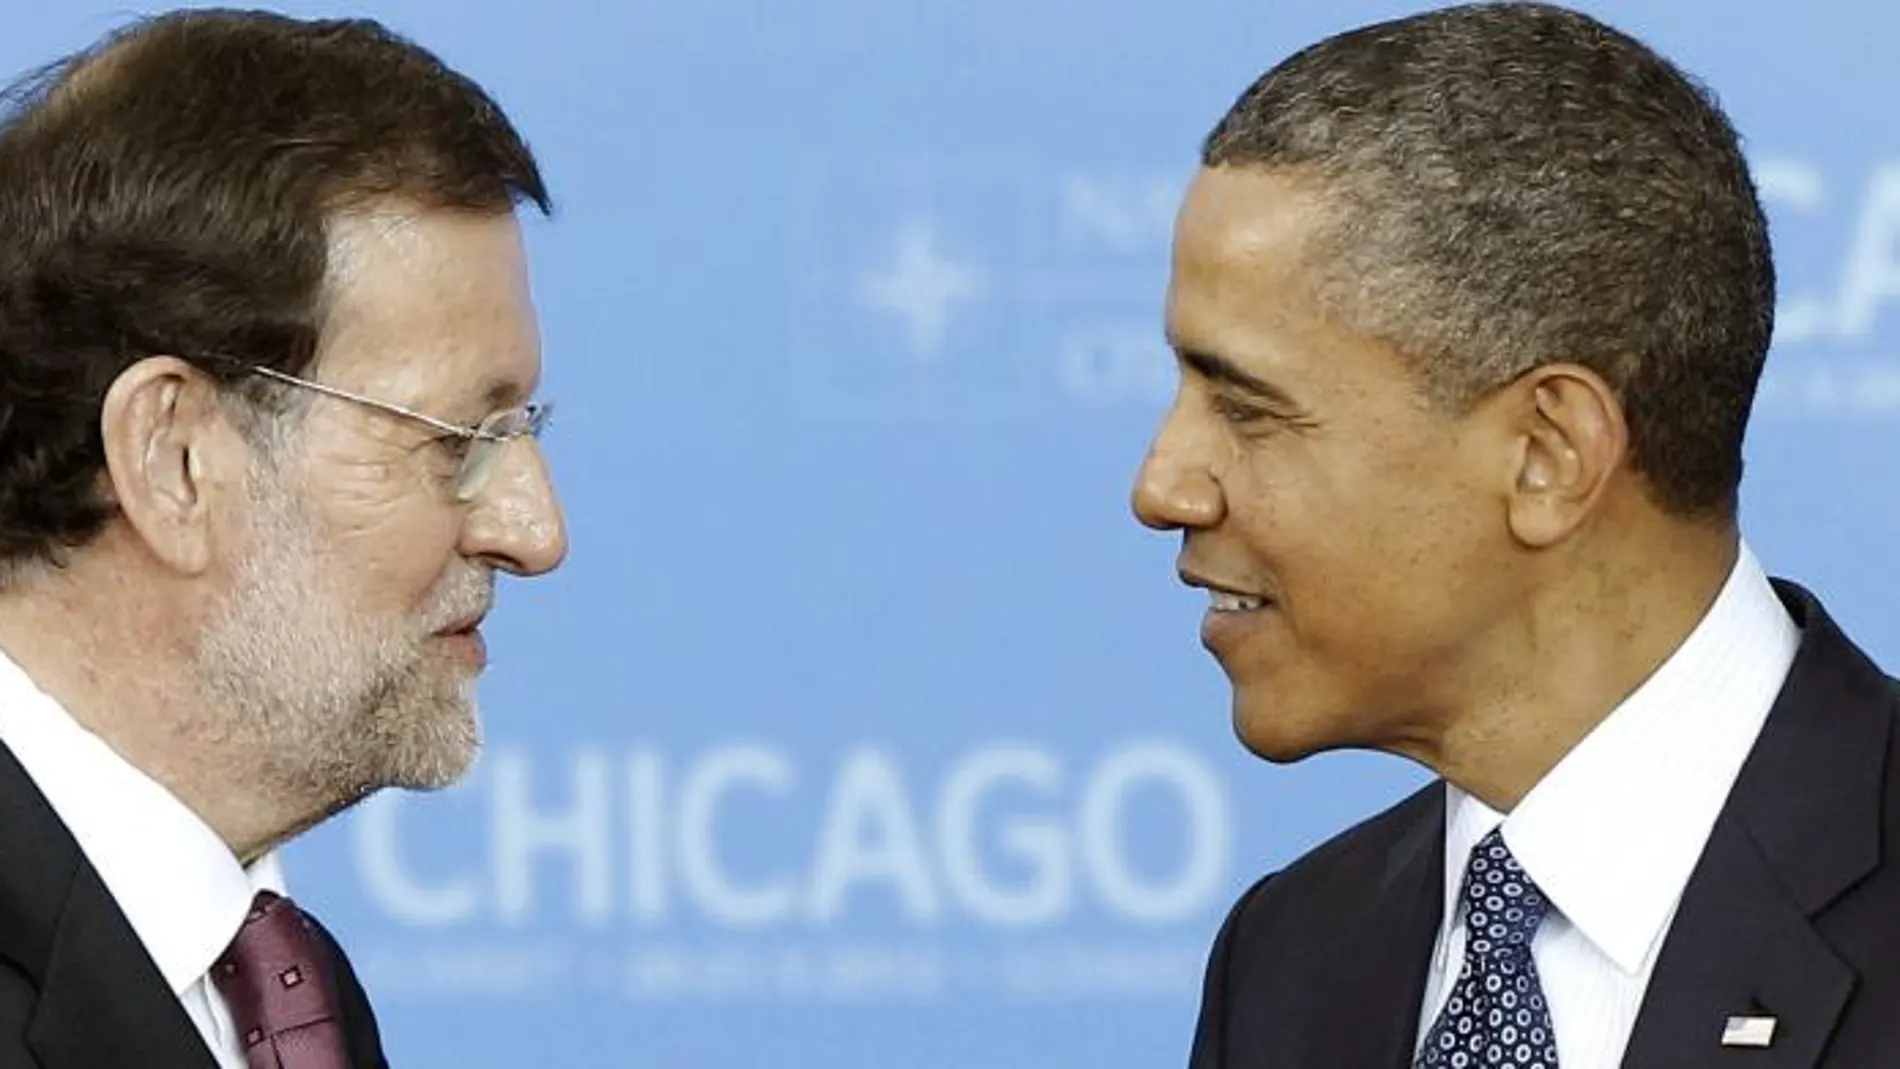 El jefe del Gobierno español, Mariano Rajoy, y el presidente de Estados Unidos, Barak Obama, se saludan en la cumbre de la OTAN de Chicago (EEUU) en 2012.